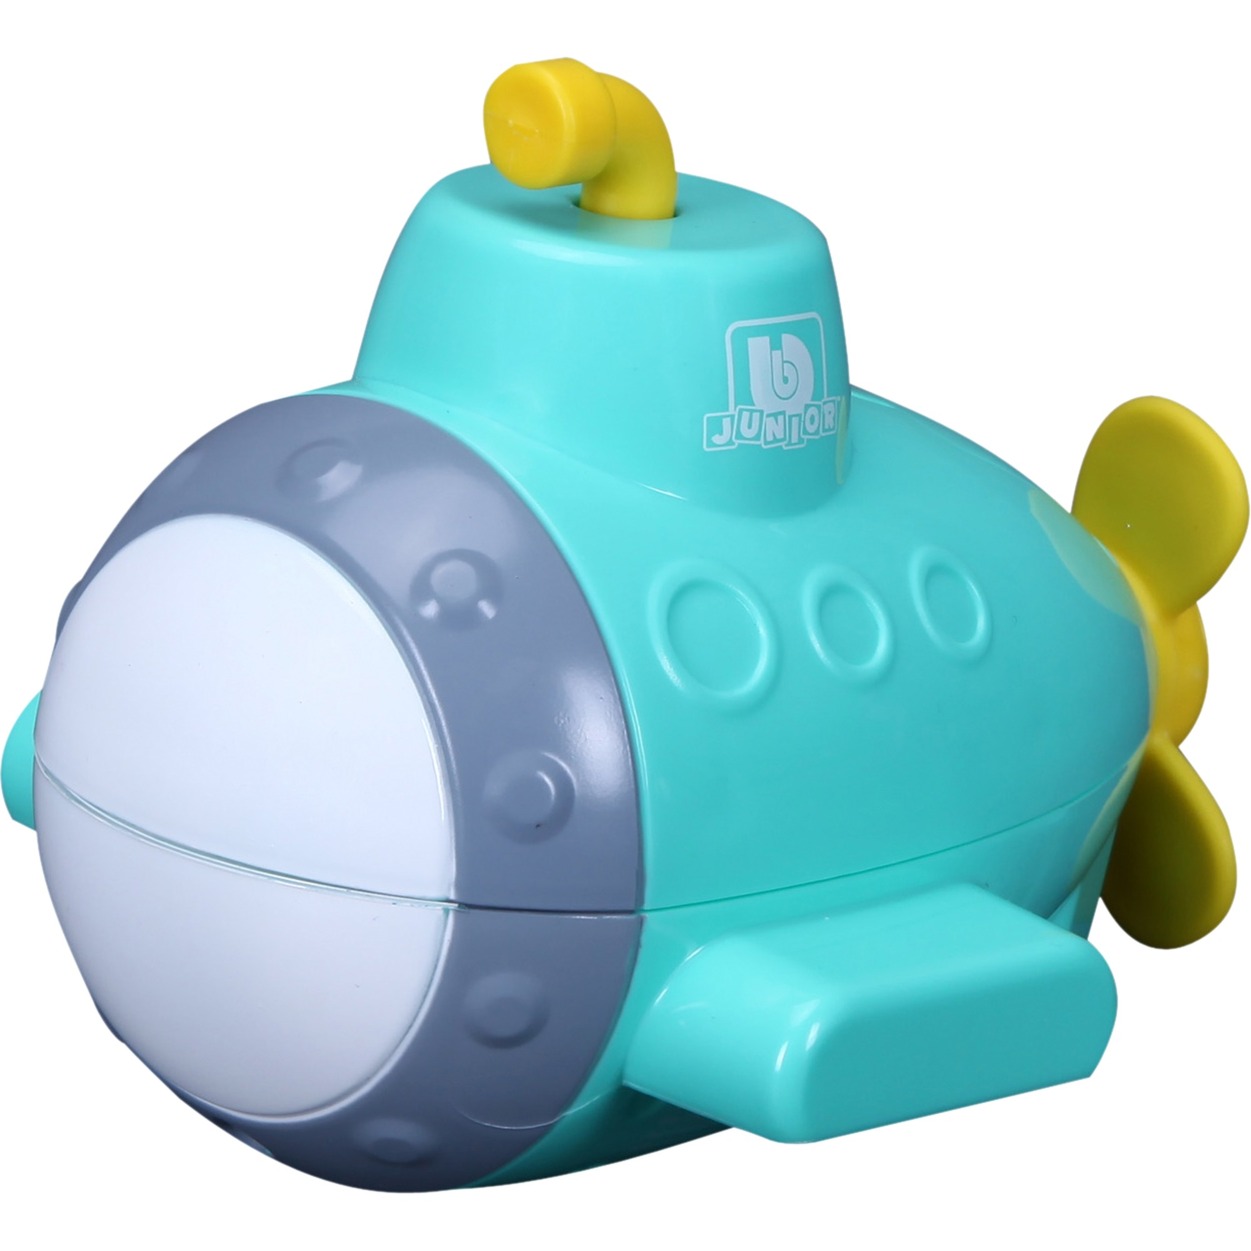 Image of Alternate - BB Junior Submarine Projector, Wasserspielzeug online einkaufen bei Alternate